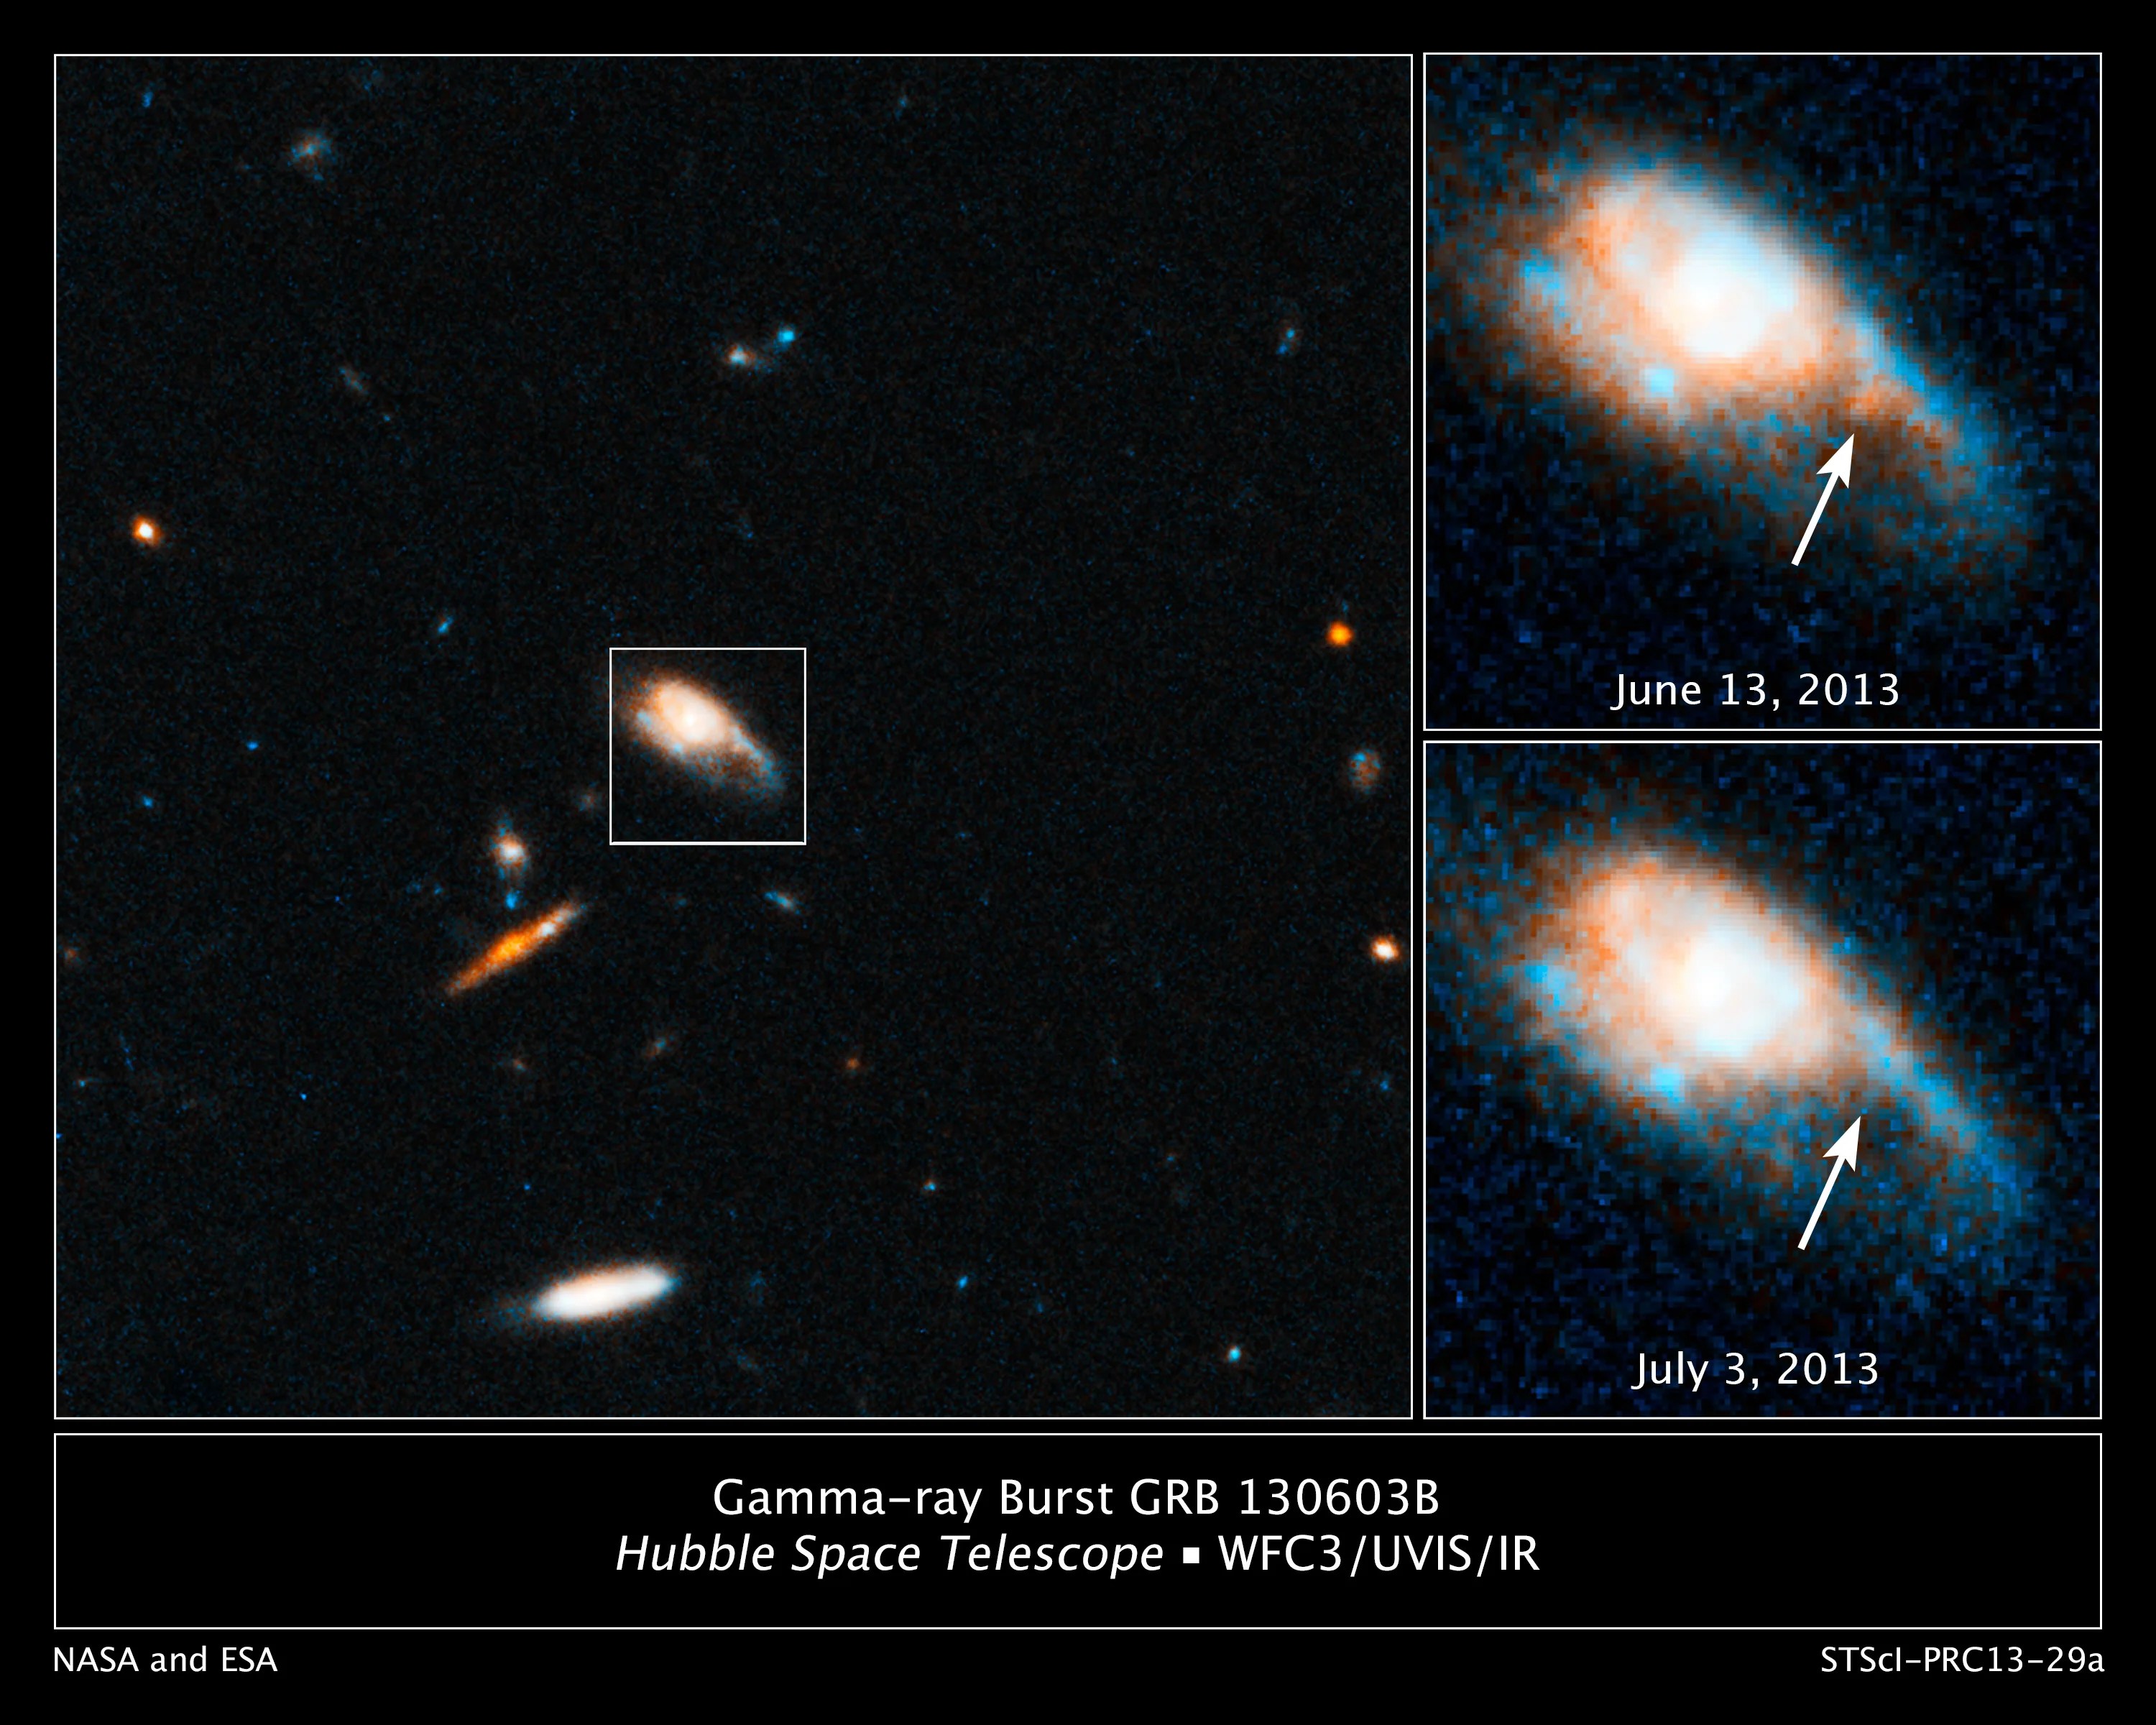 Hubble image of grb 130603b, sds j112848.22+170418.5